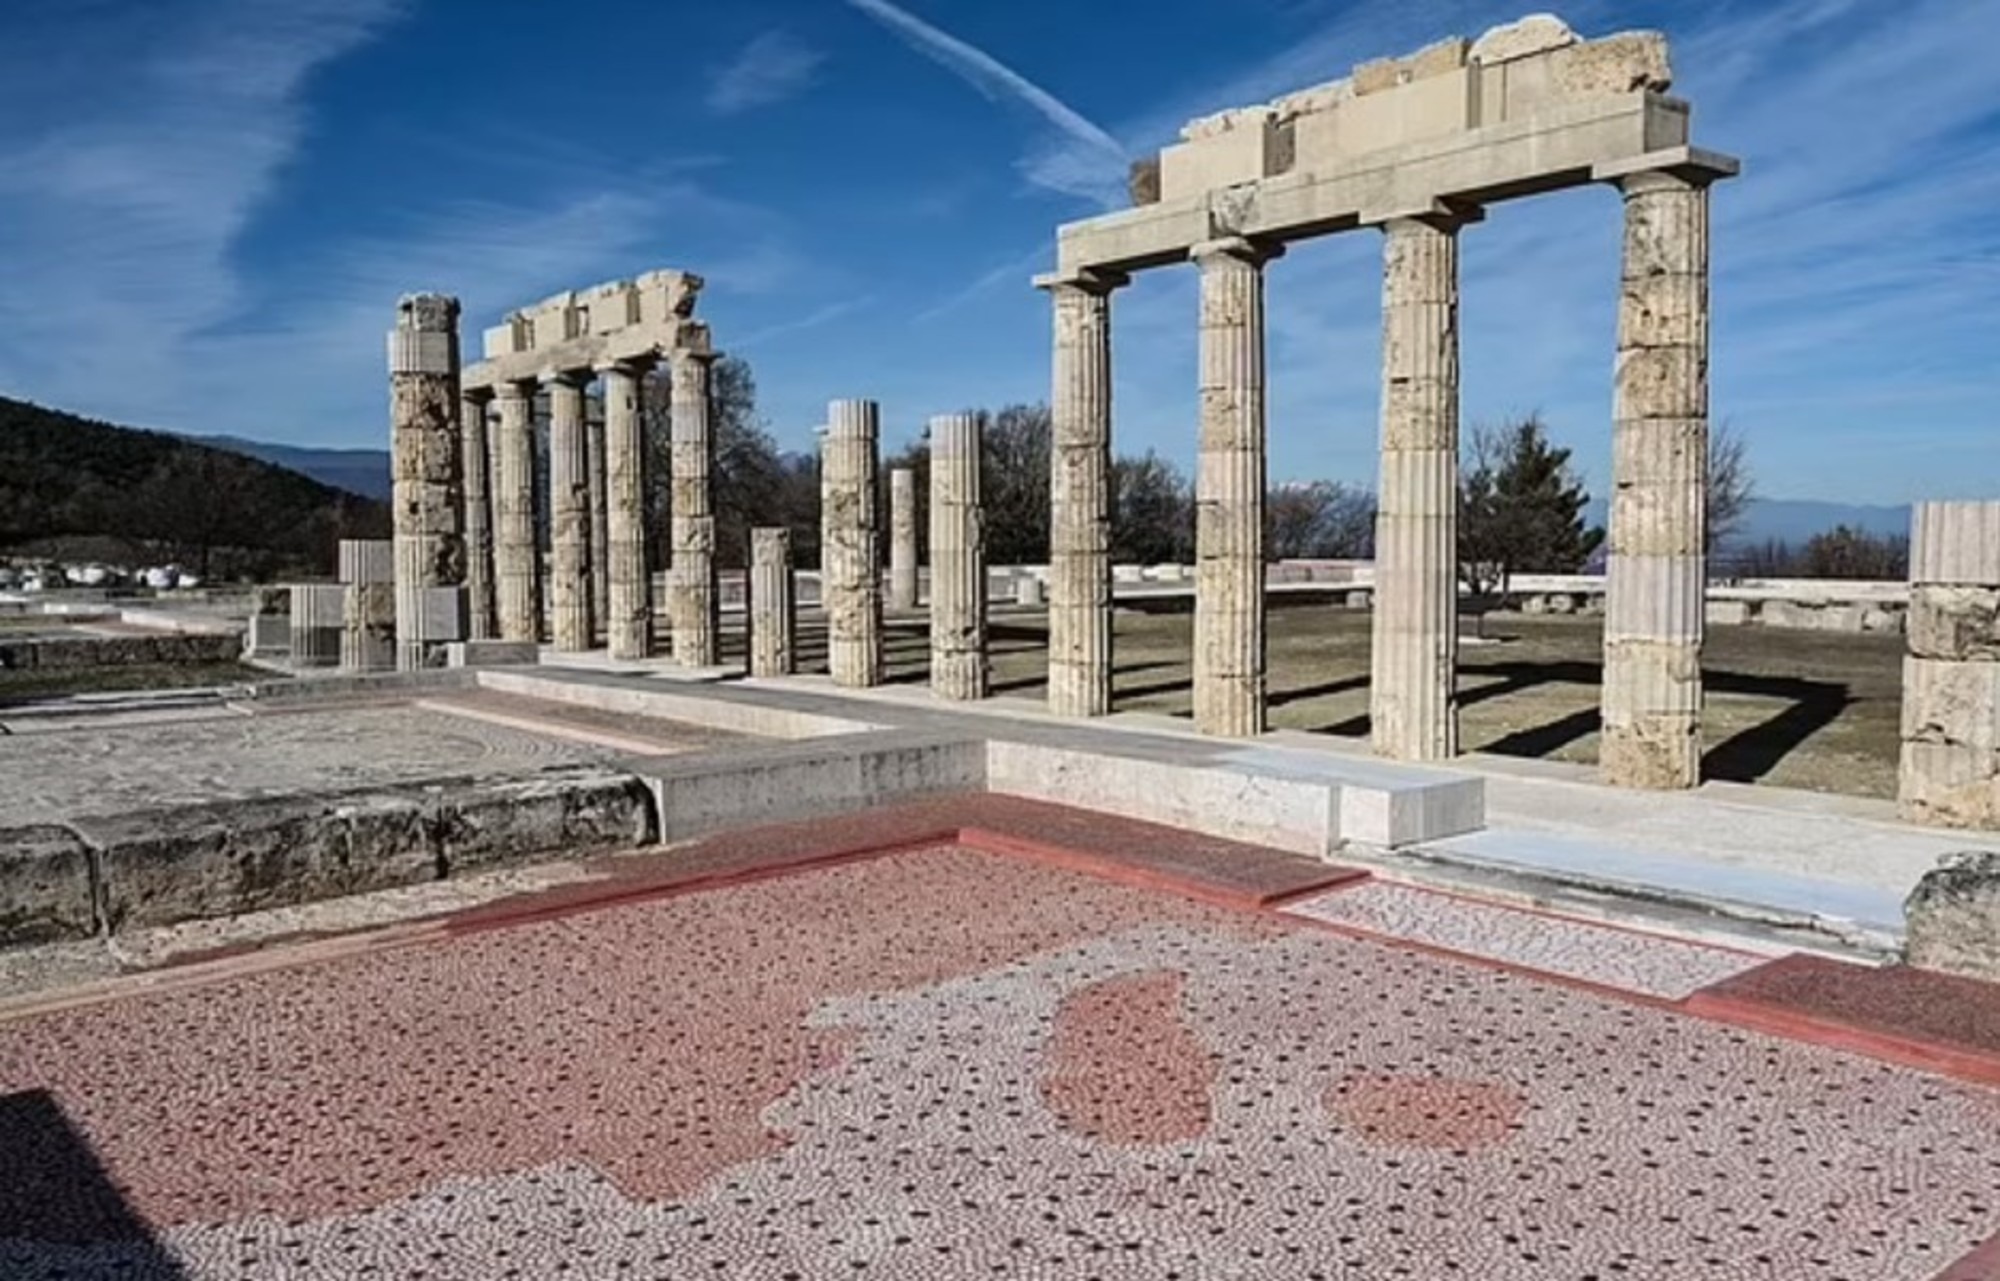 Hallan el lugar en el que Alejandro Magno disfrutaba de baños “homoeróticos” con sus compañeros